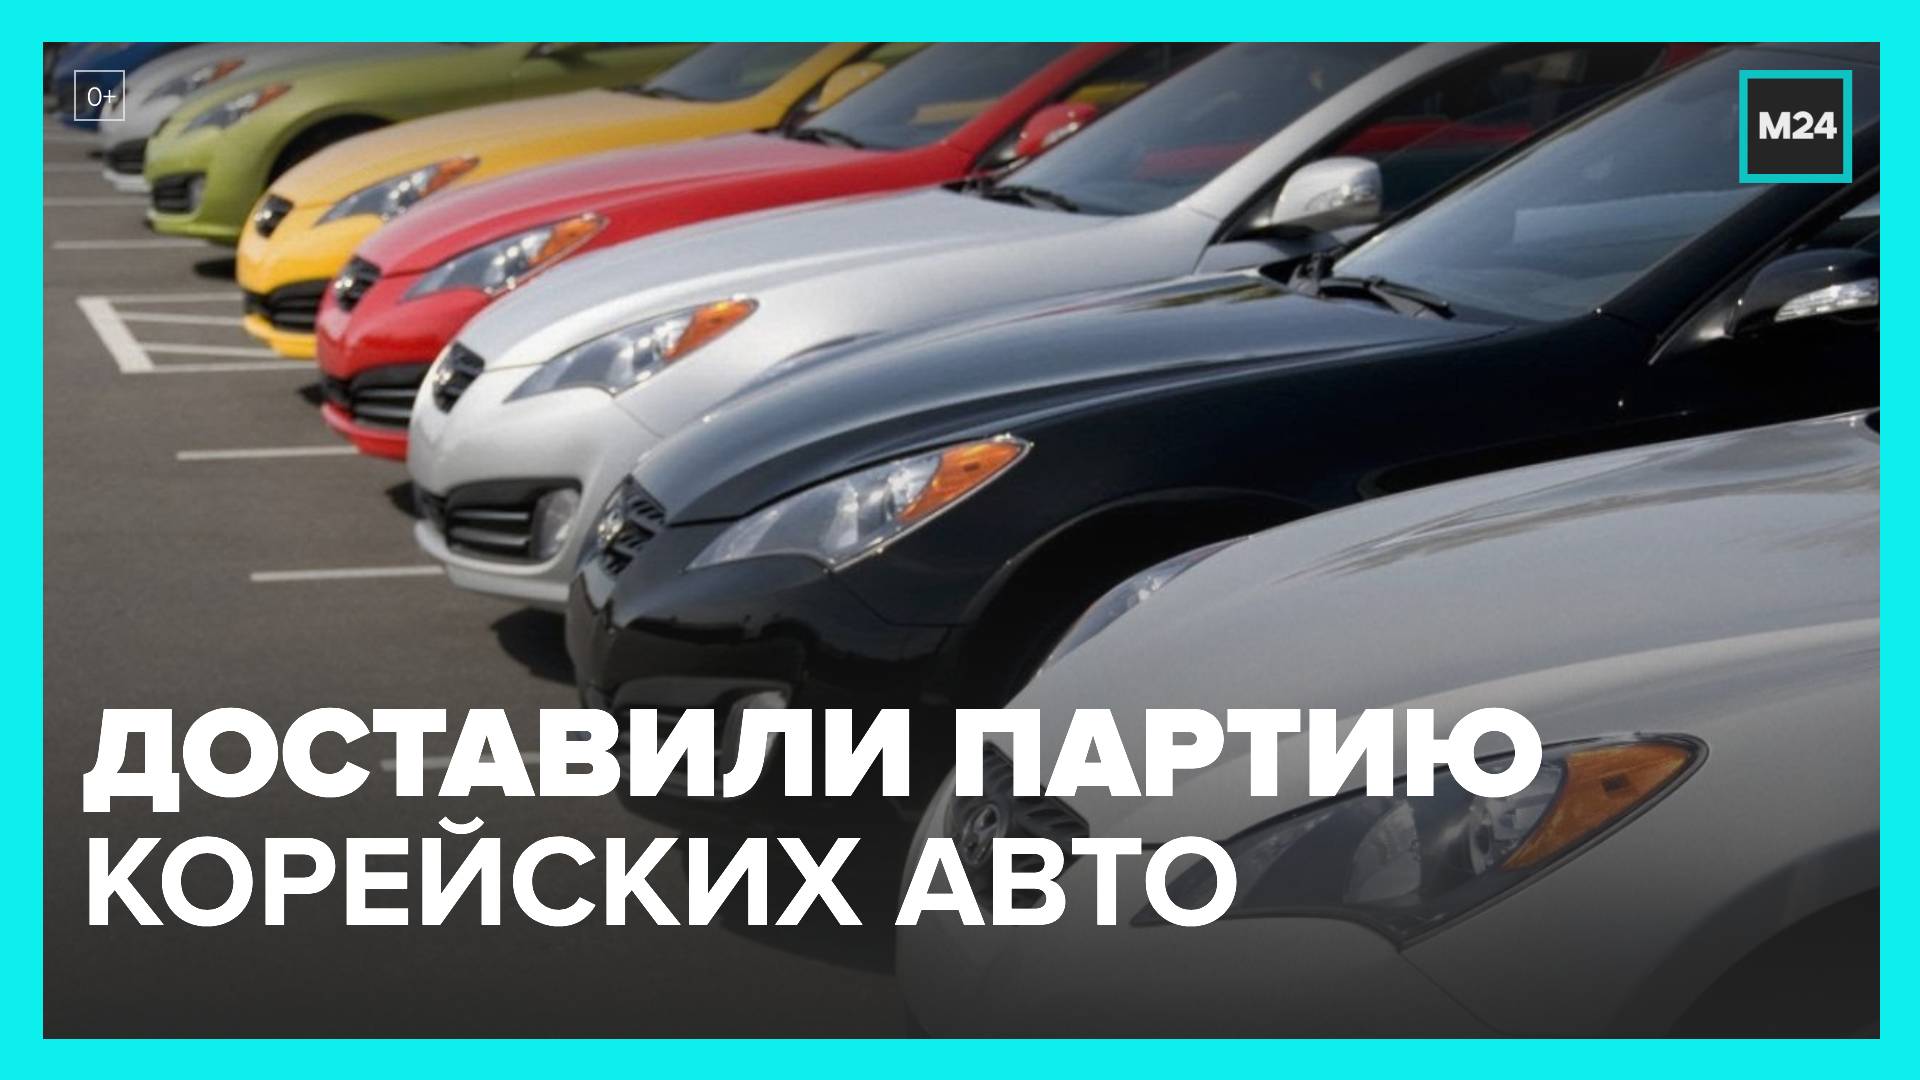 В автосалоны Москвы пришла партия корейских автомобилей - Москва 24